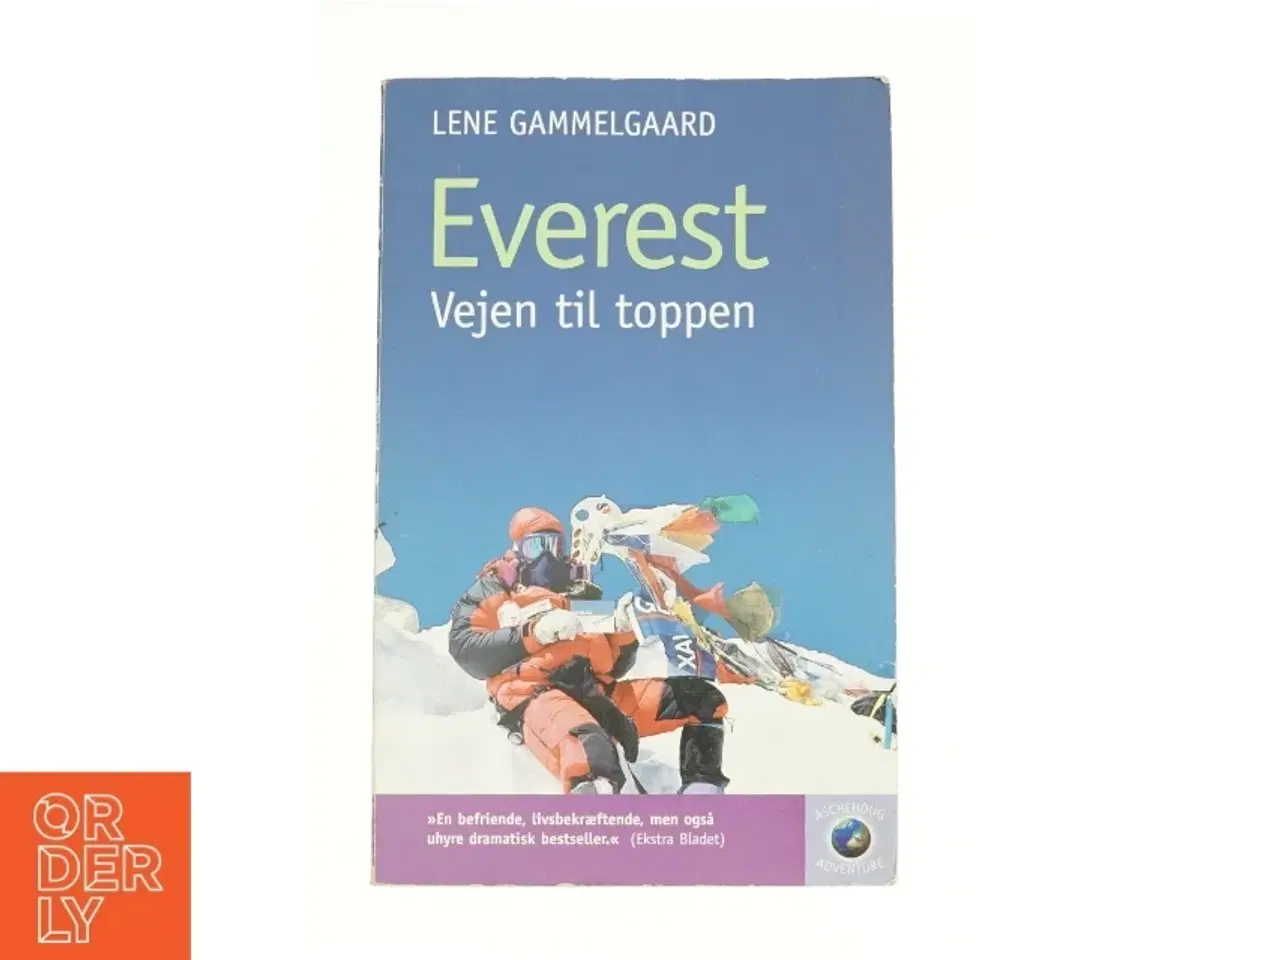 Billede 1 - Everest - vejen til toppen af Lene Gammelgaard (Bog)